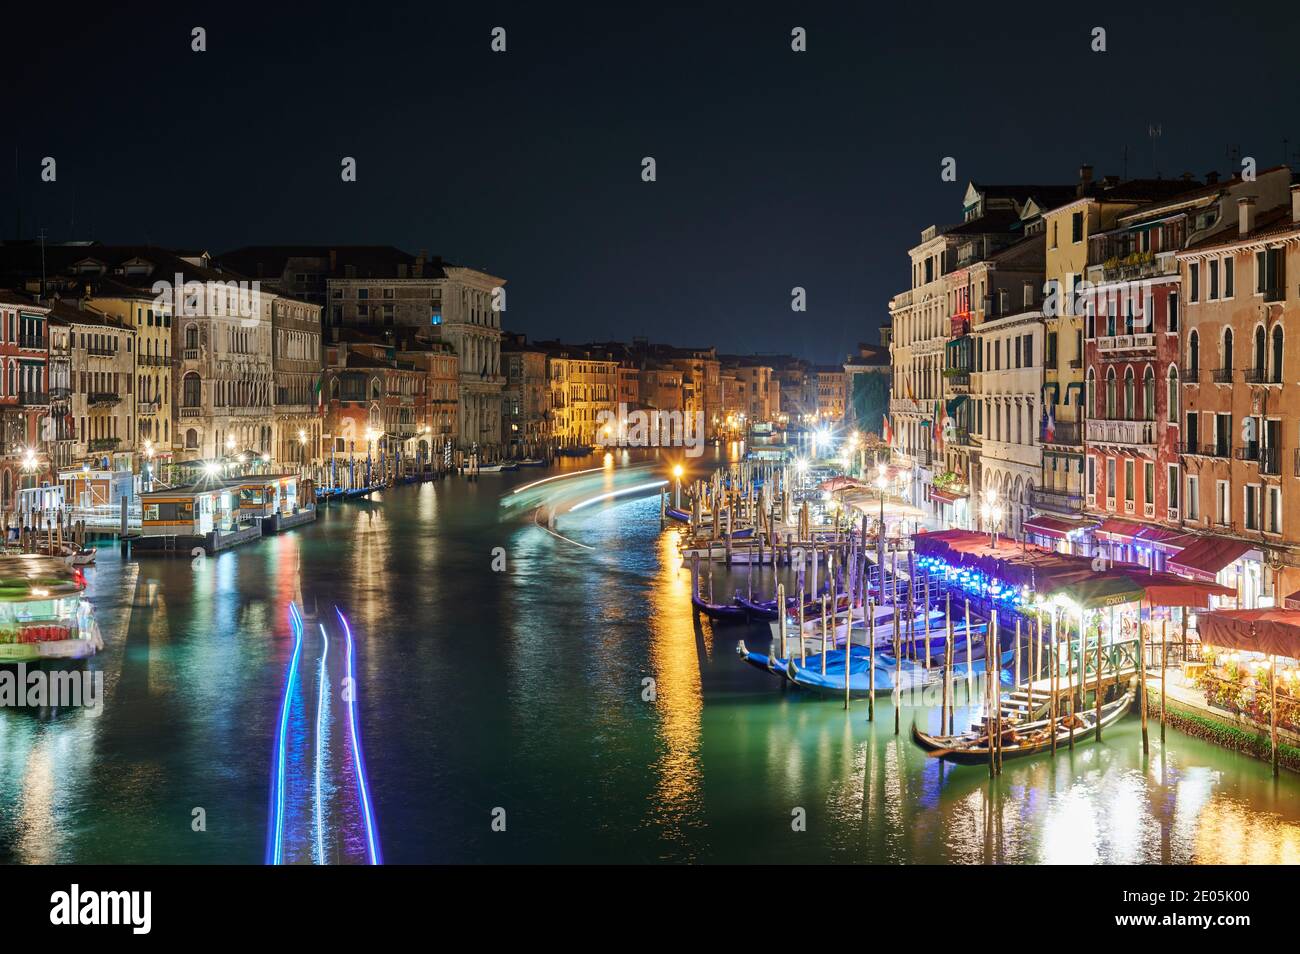 Night shot of the Grand Canal and illuminated buildings from the Rialto Bridge, Venice, Veneto, Italy Stock Photo